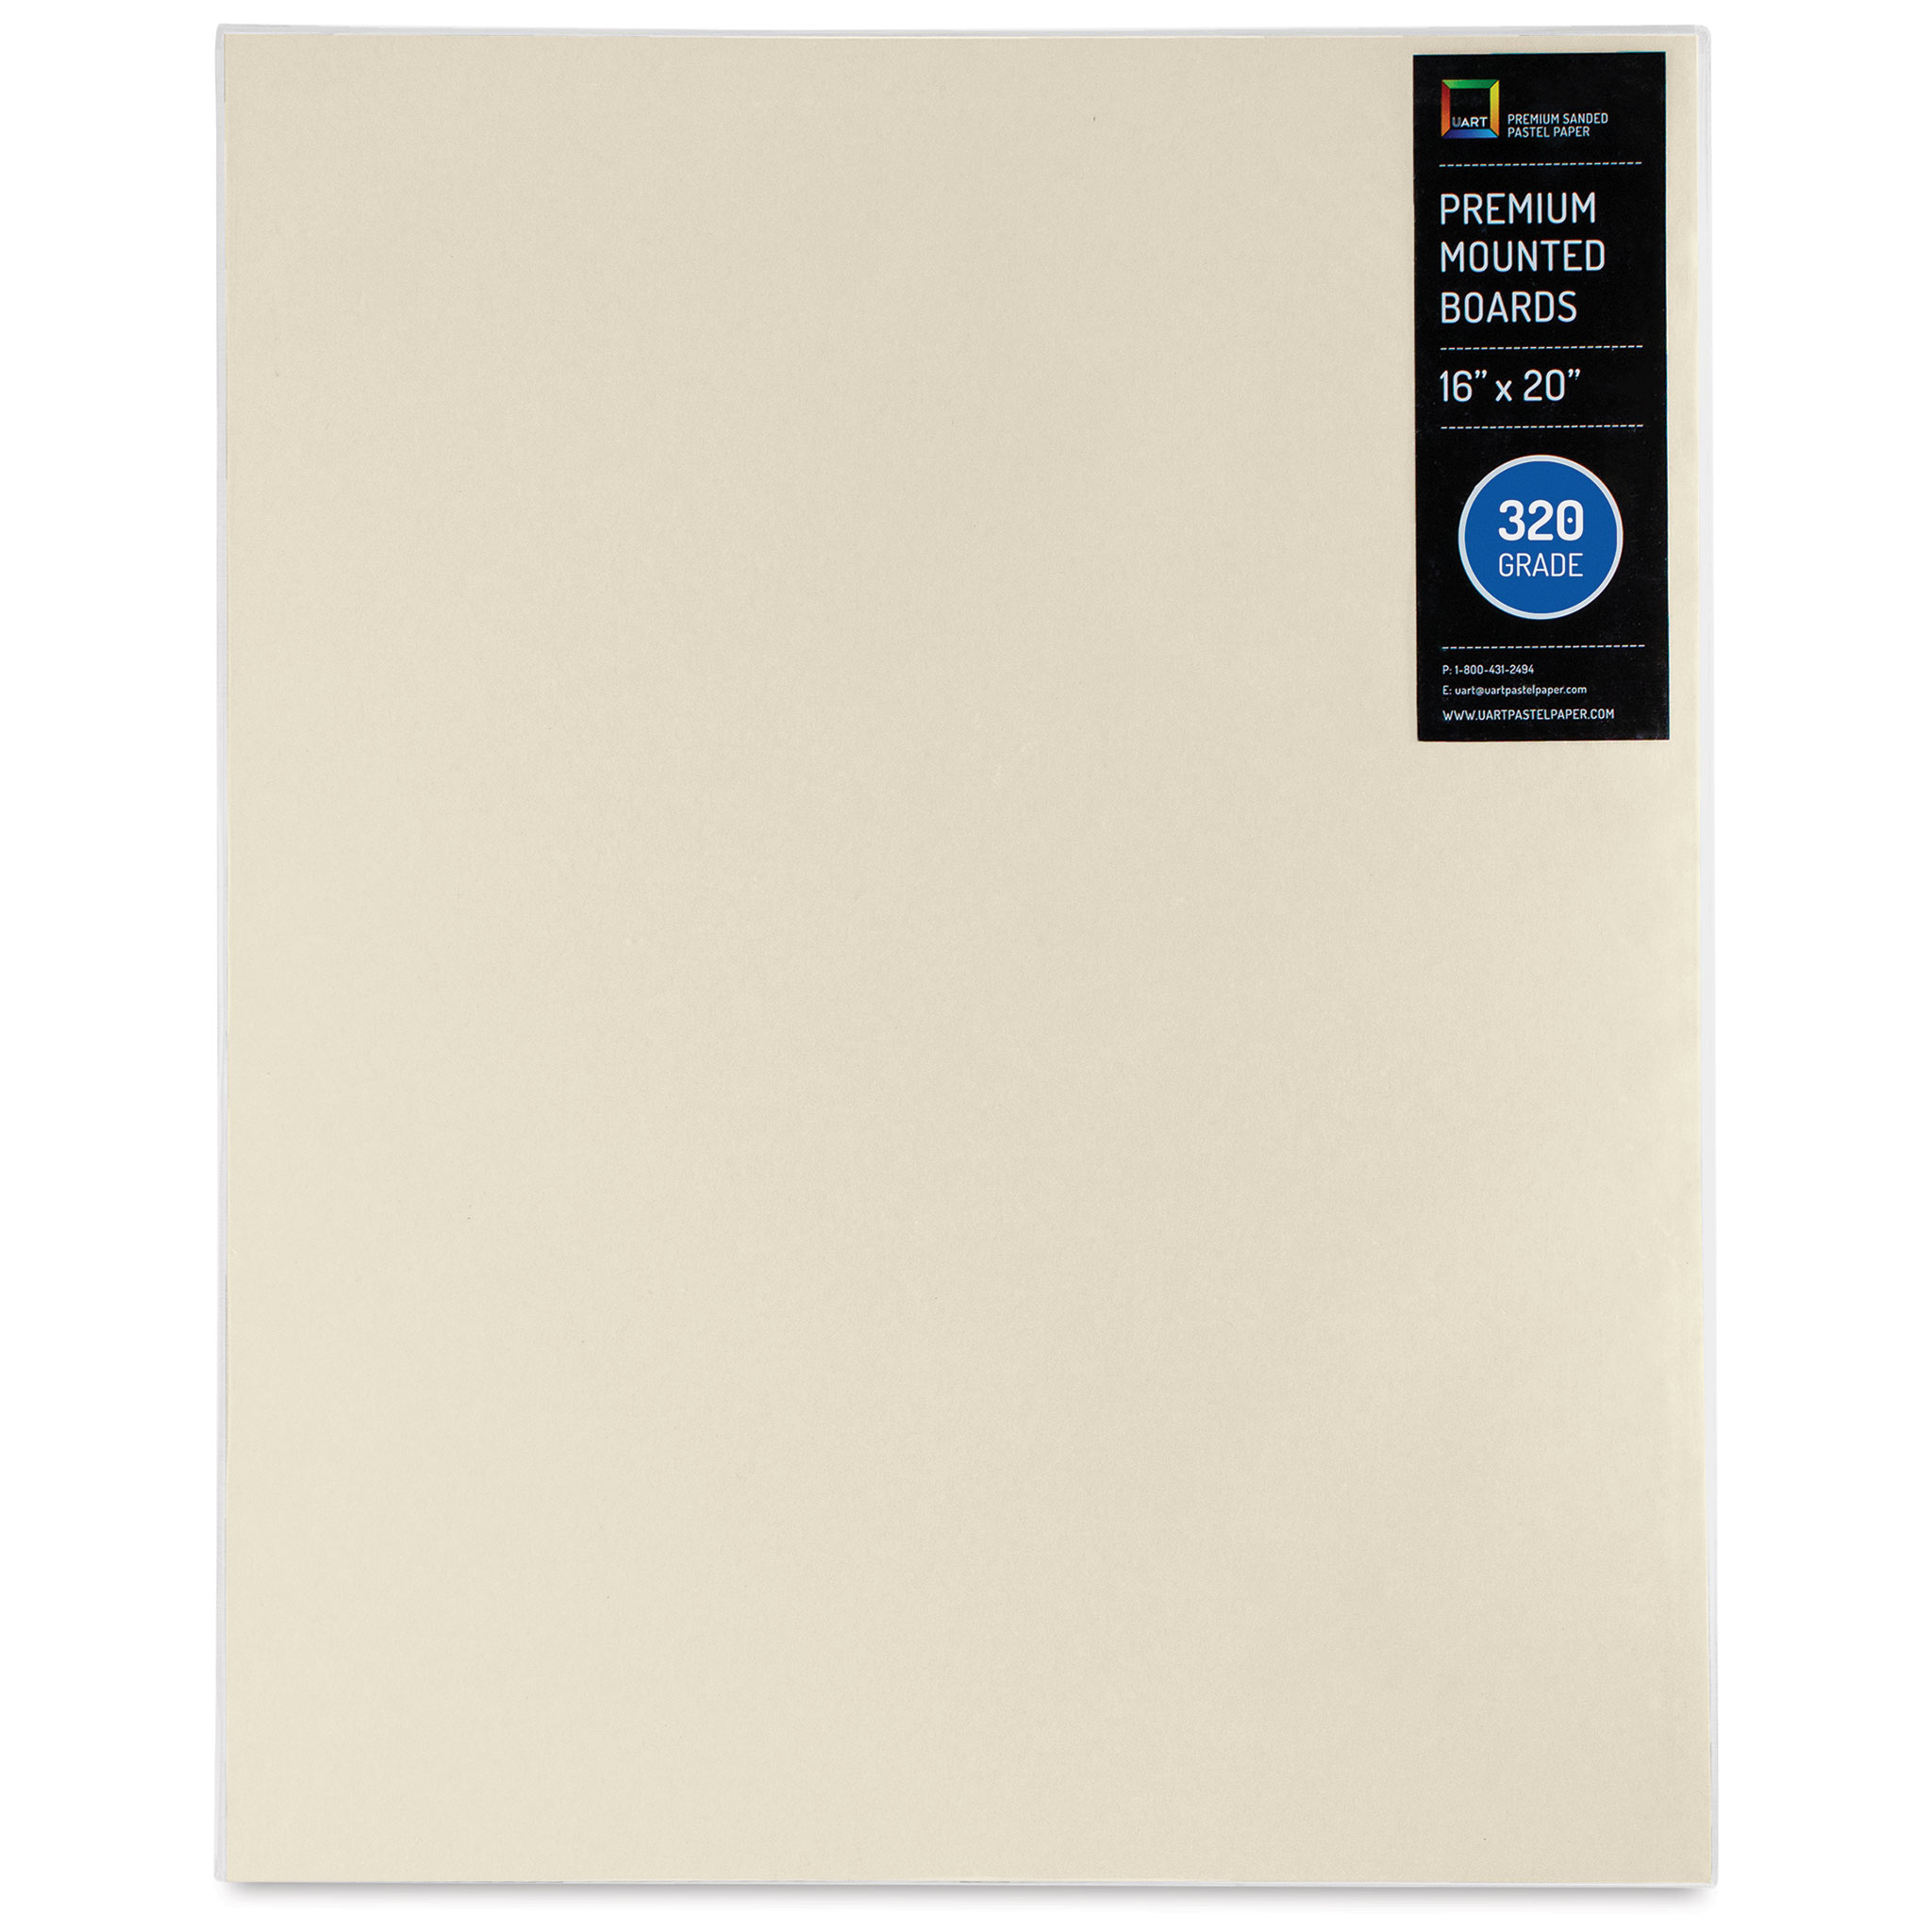 UART Sanded Pastel Paper 800 Grade 21 x 27 (Pack of 10